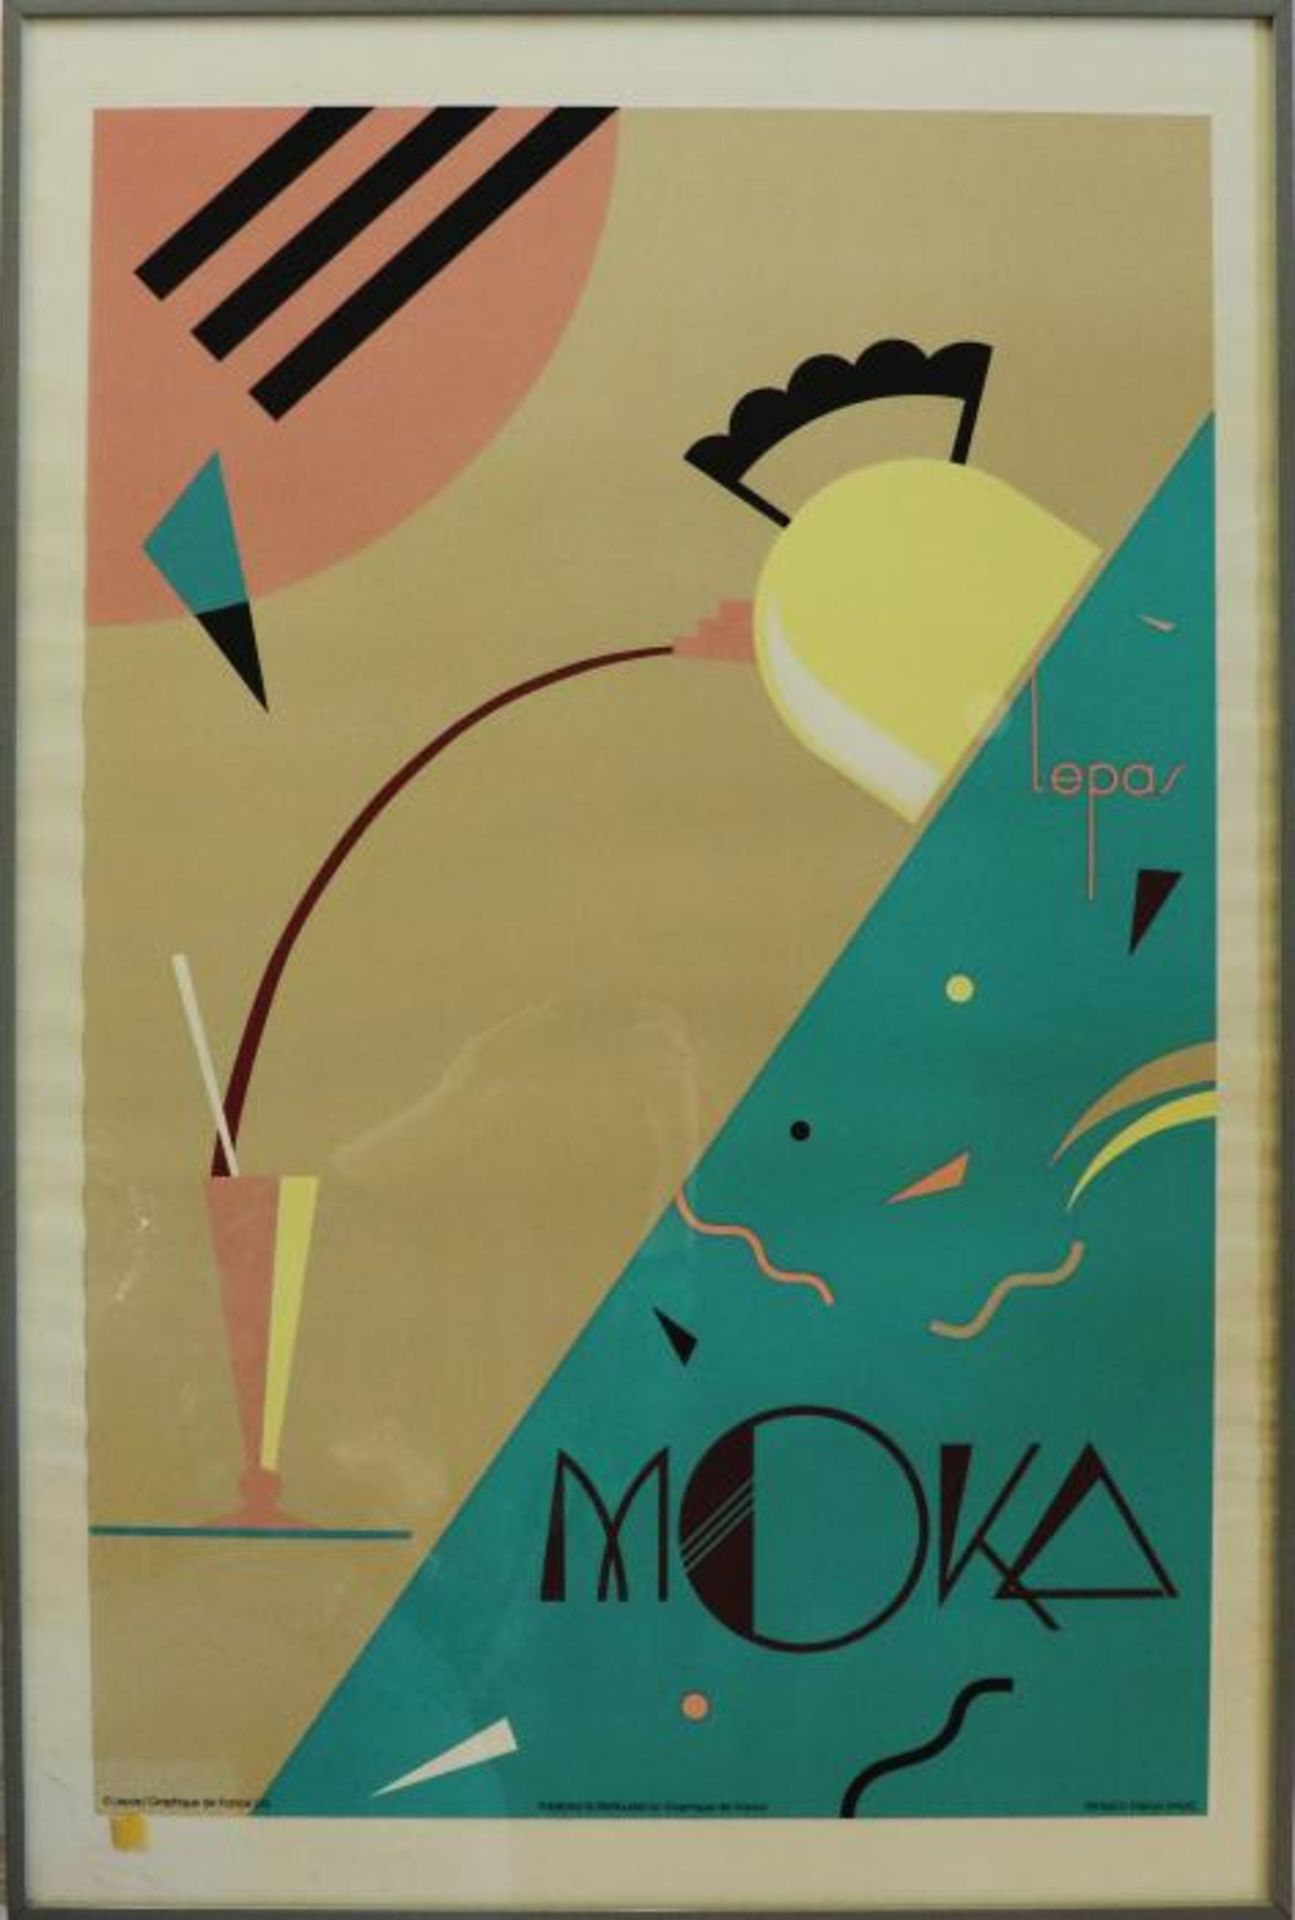 Graphique de France2 Farblithos., "Moka" u. "Café Noir", herausgegeben bei Lepas, Graphique de - Image 2 of 2